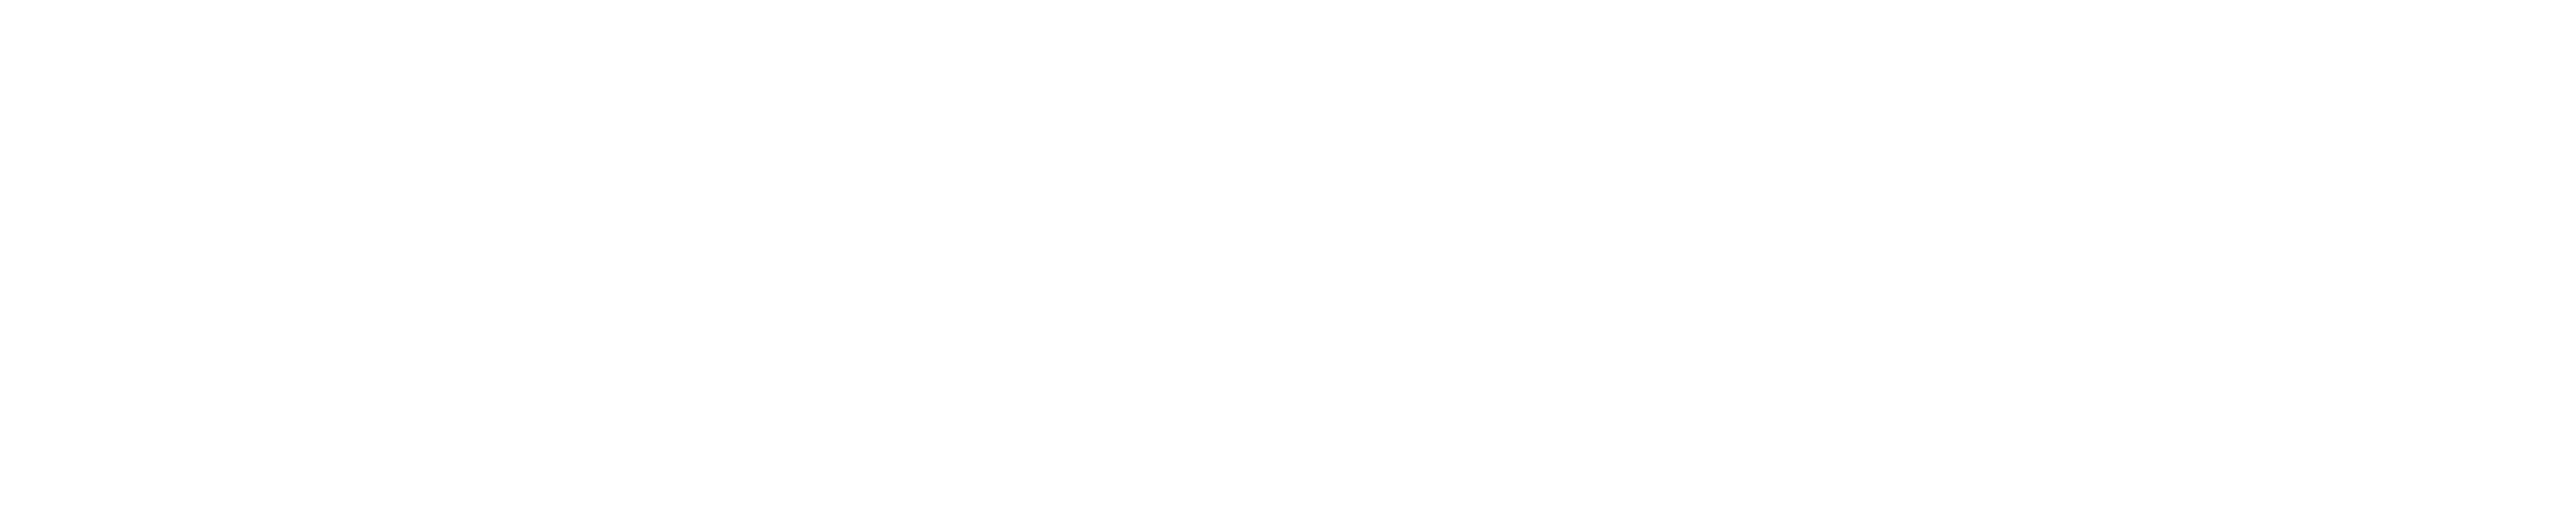 Davis Wire